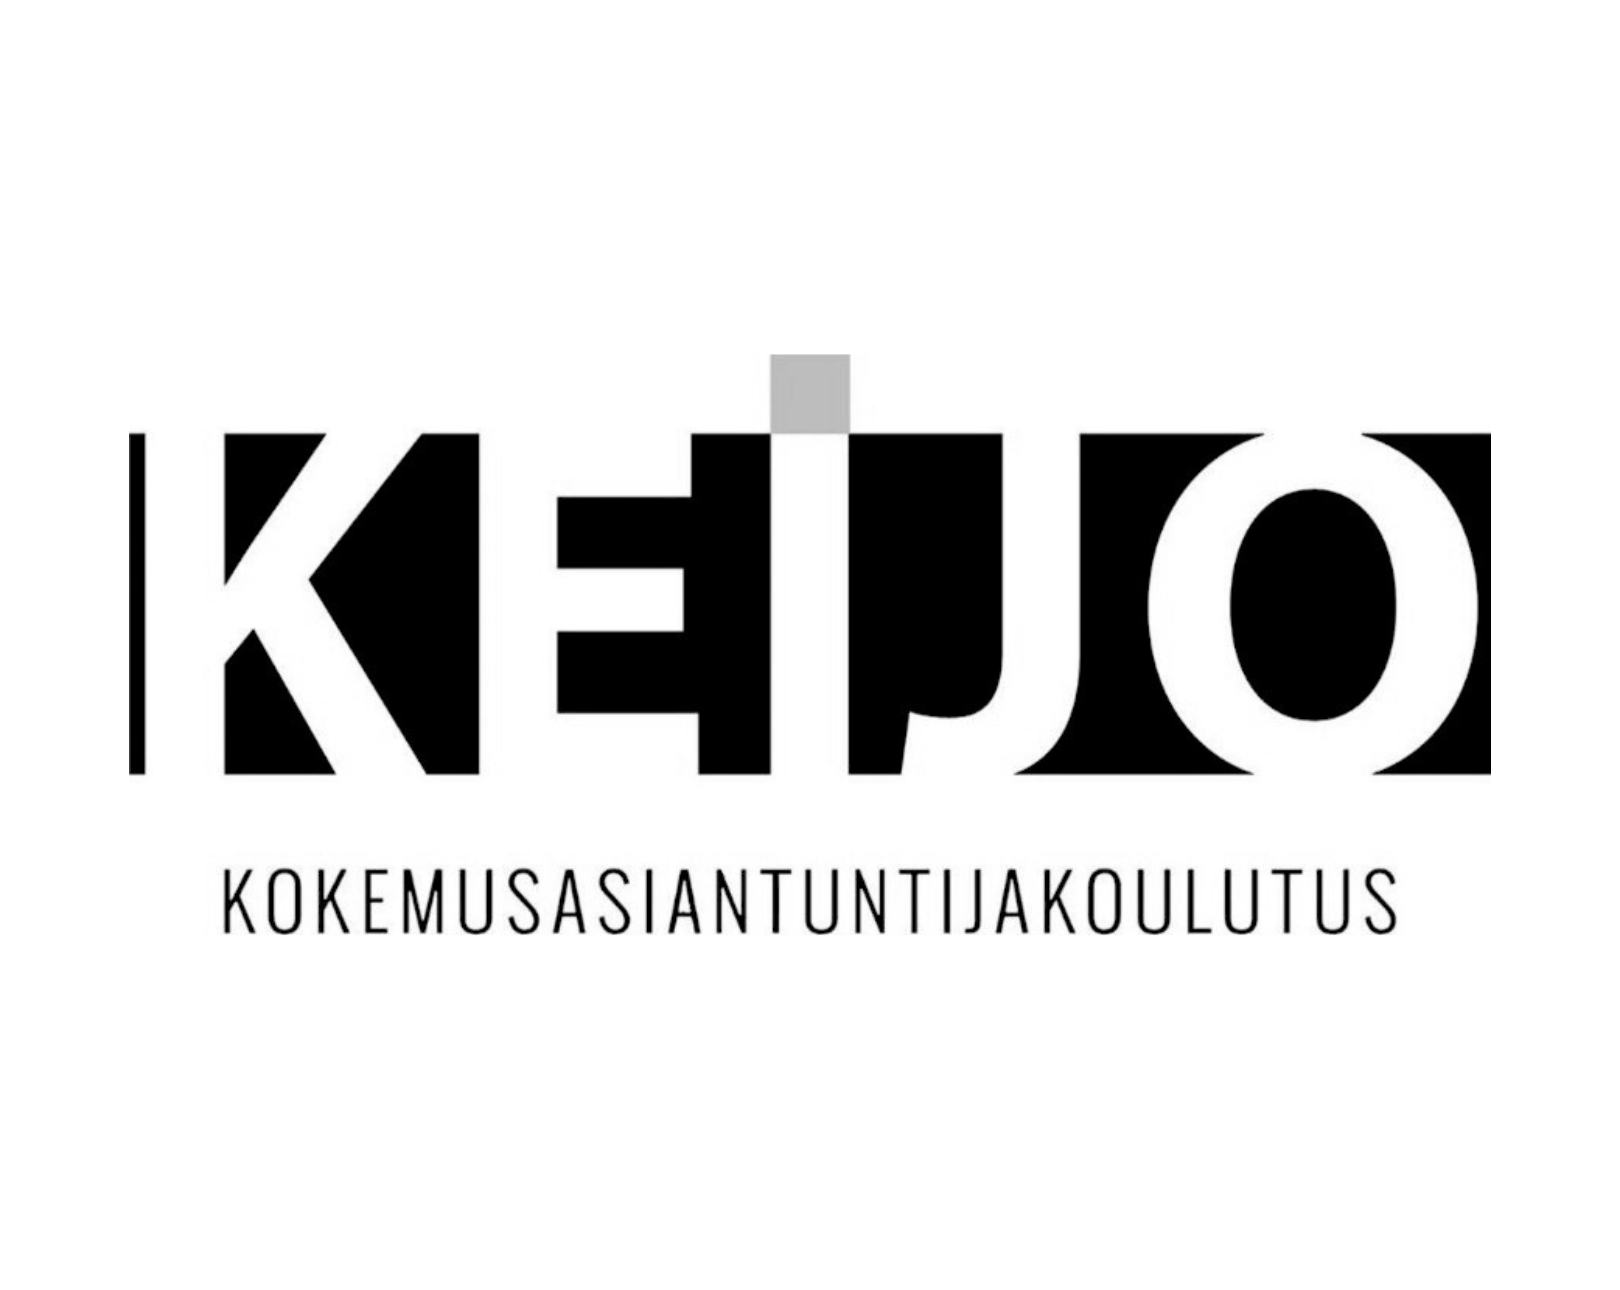 Keijo-kokemusasiantuntijakoulutuksen logo.